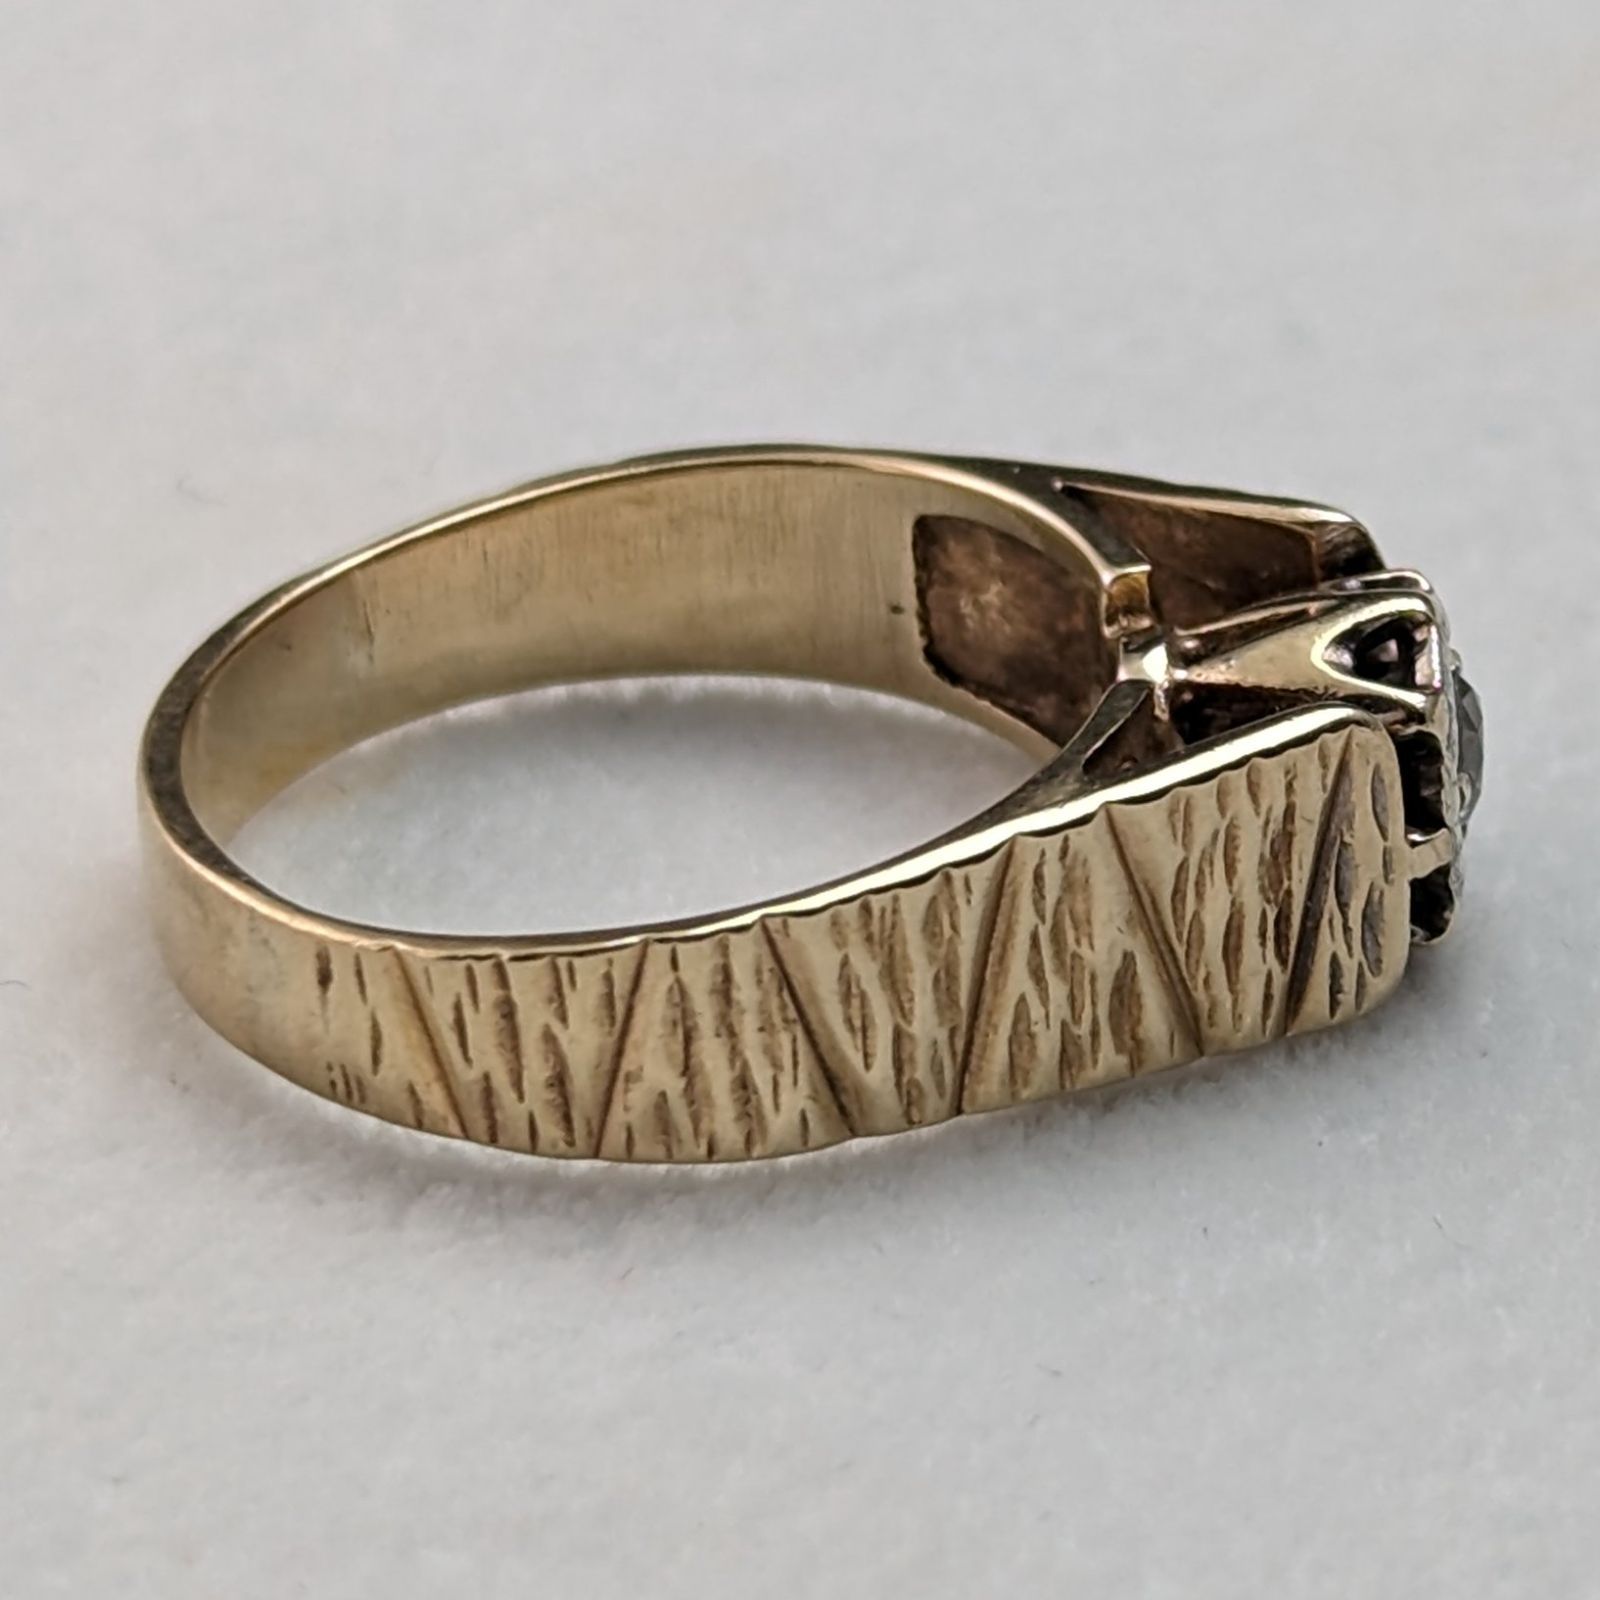 1972年 英国ヴィンテージジュエリー ダイヤモンド K9ゴールドリング 婚約指輪 - メルカリ